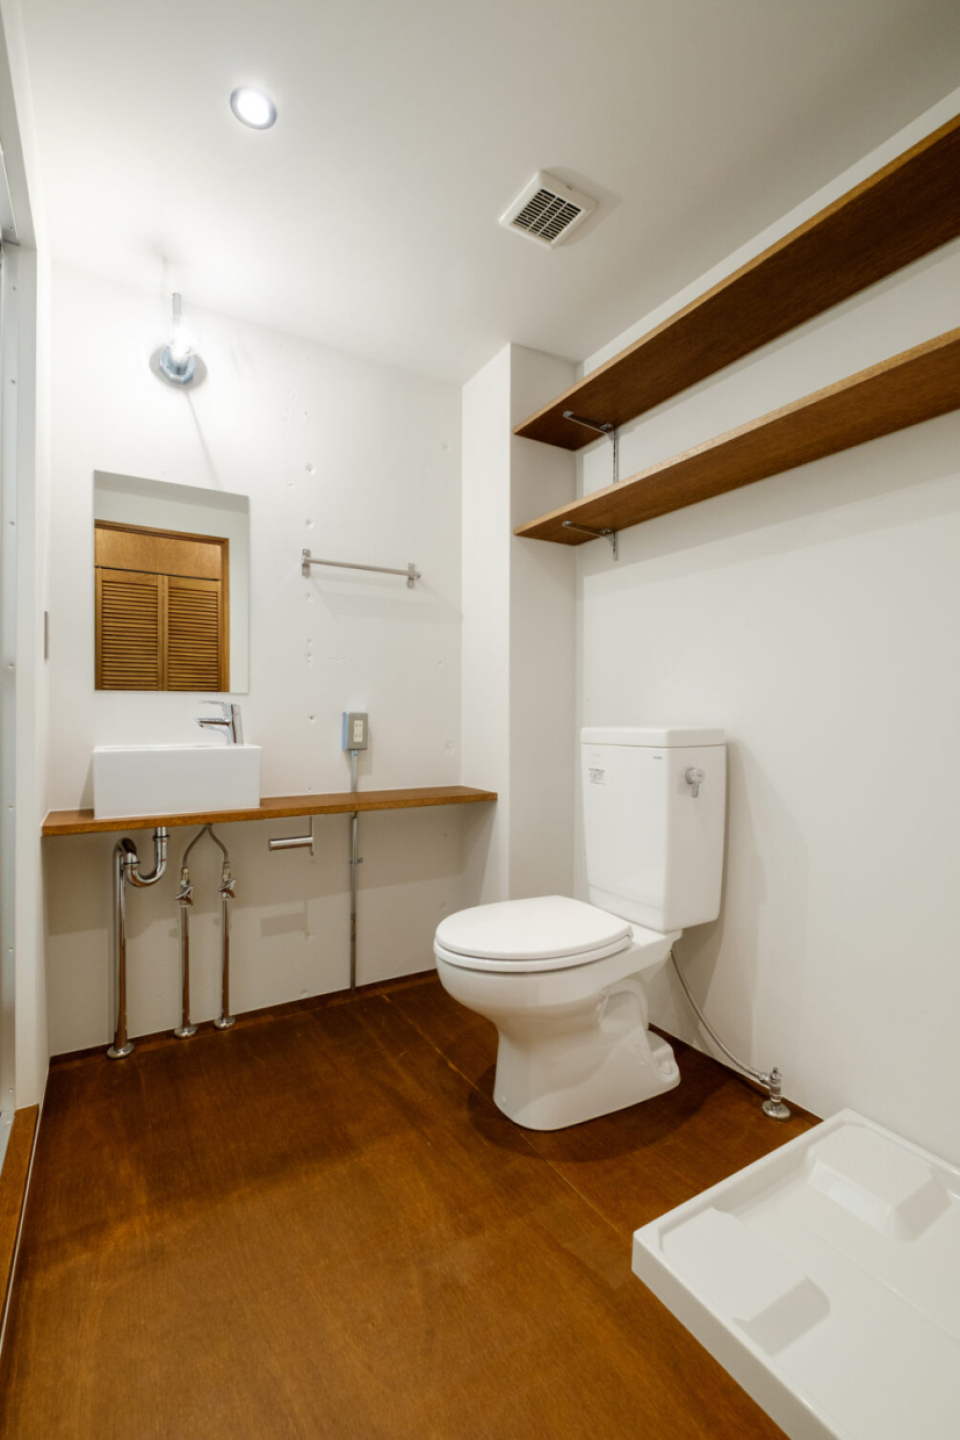 トイレと洗面は同室ですが、広さがあるので便利に使えそう